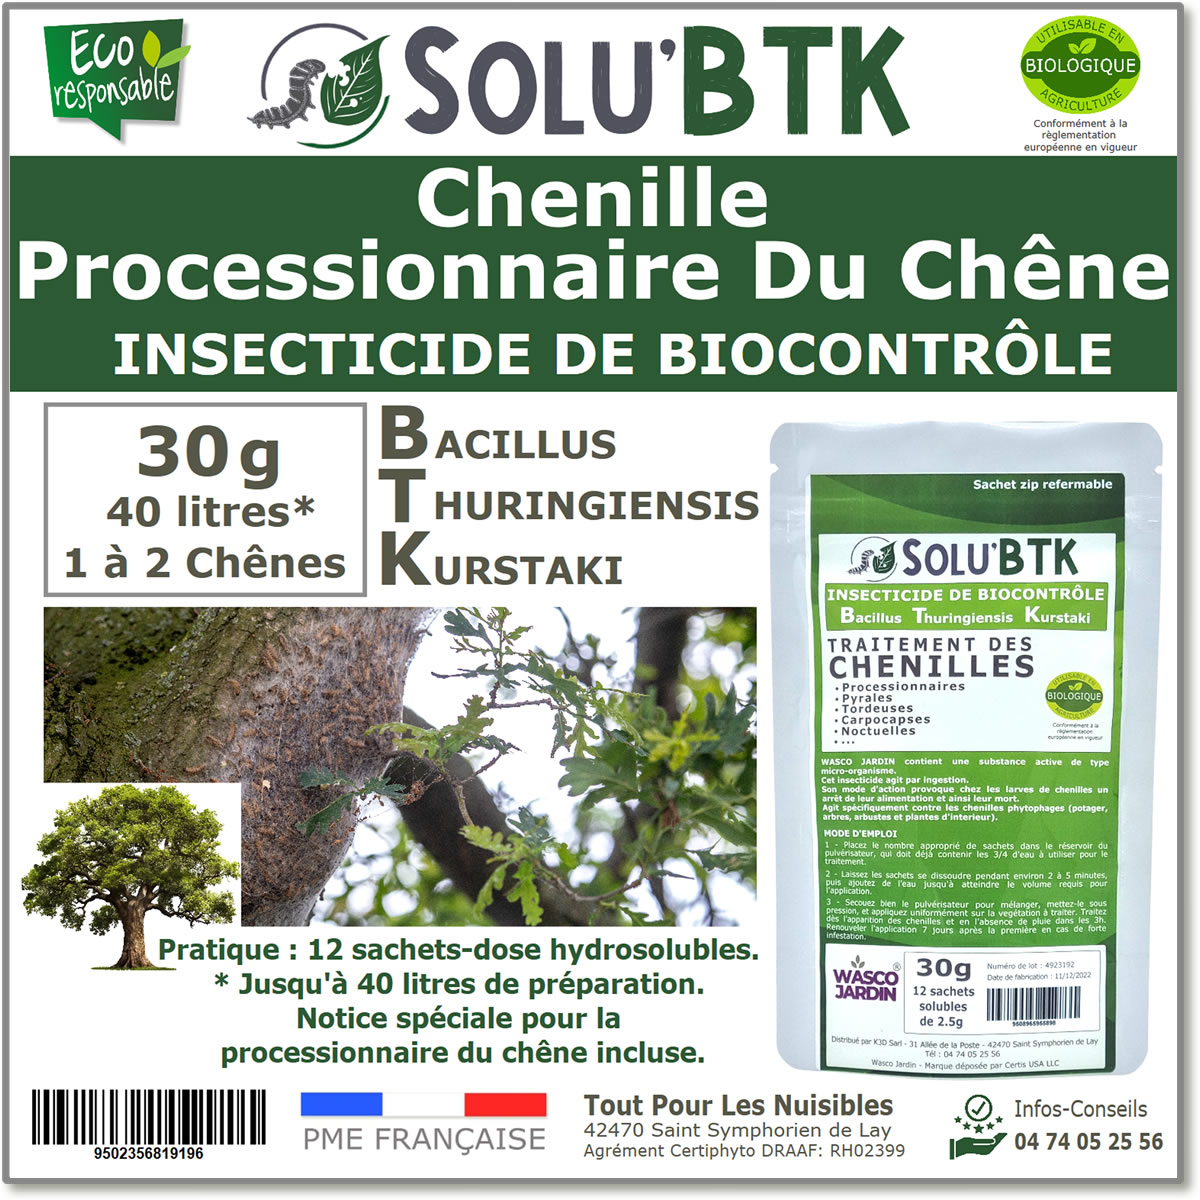 Insecticide BTK de biocontrôle contre les chenilles de la processionnaire du chêne, SOLU